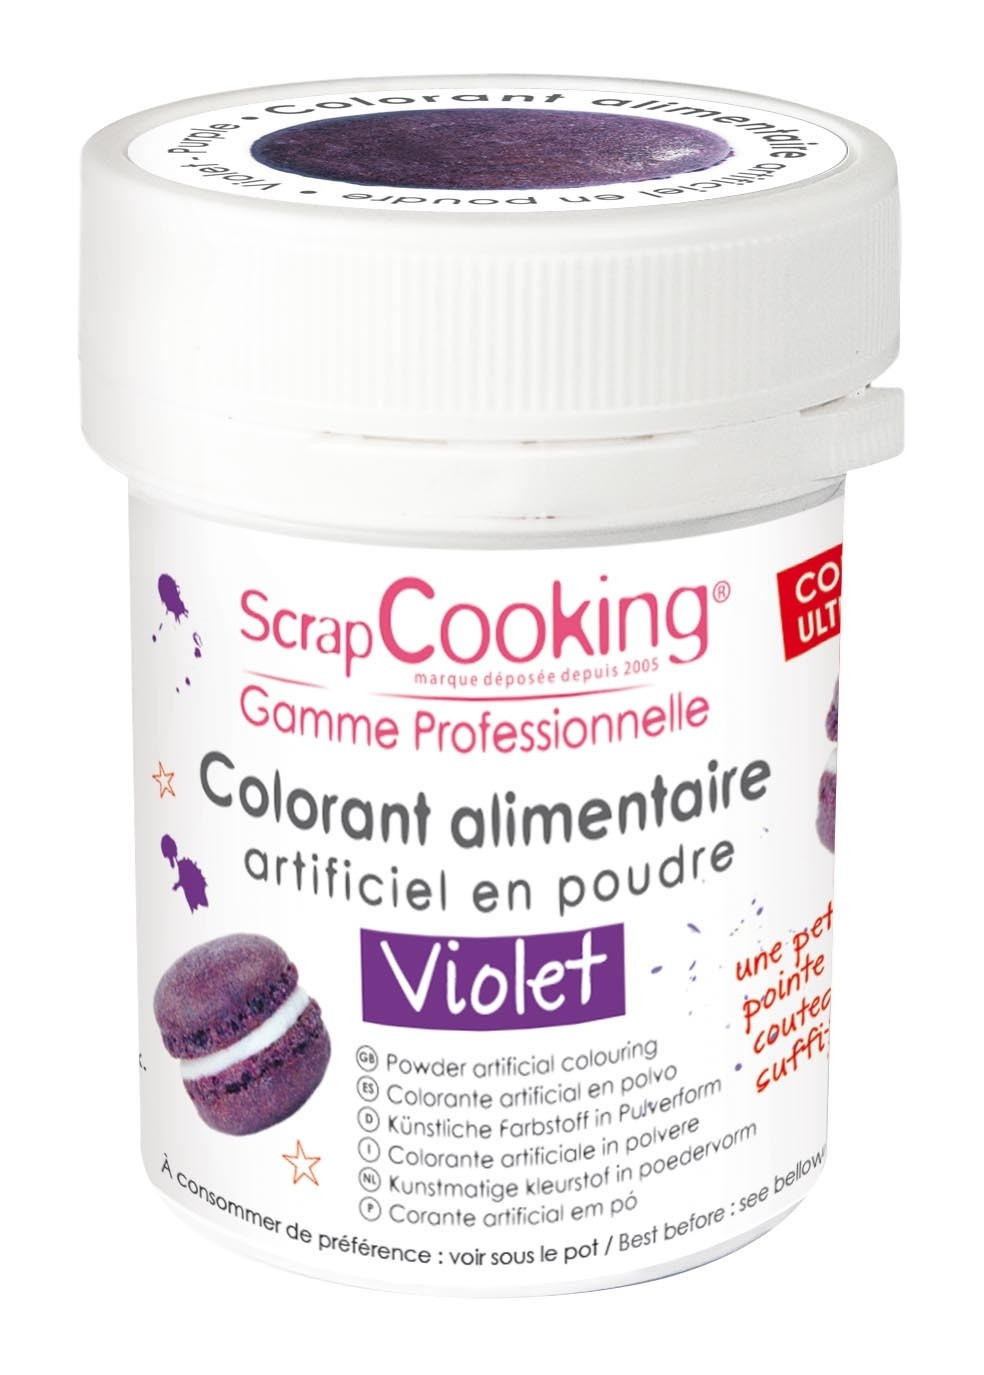 Colorant alimentaire (artificiel) Violet - Scrapcooking référence 4031